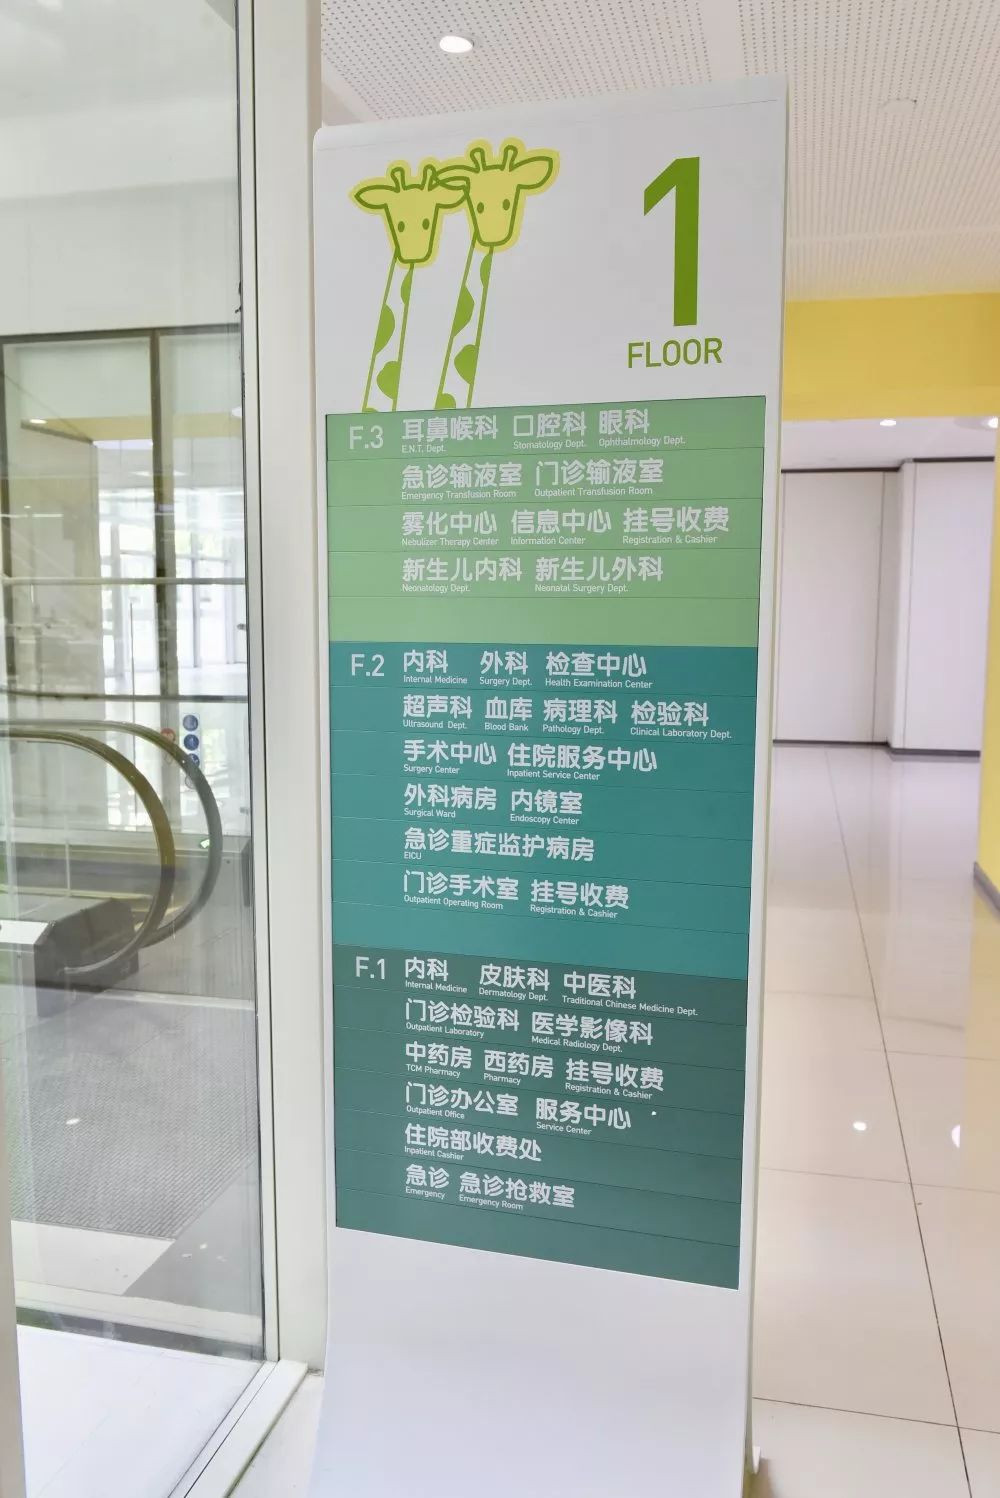 【聚焦】定了!9月30日天津市儿童医院马场院区试开诊